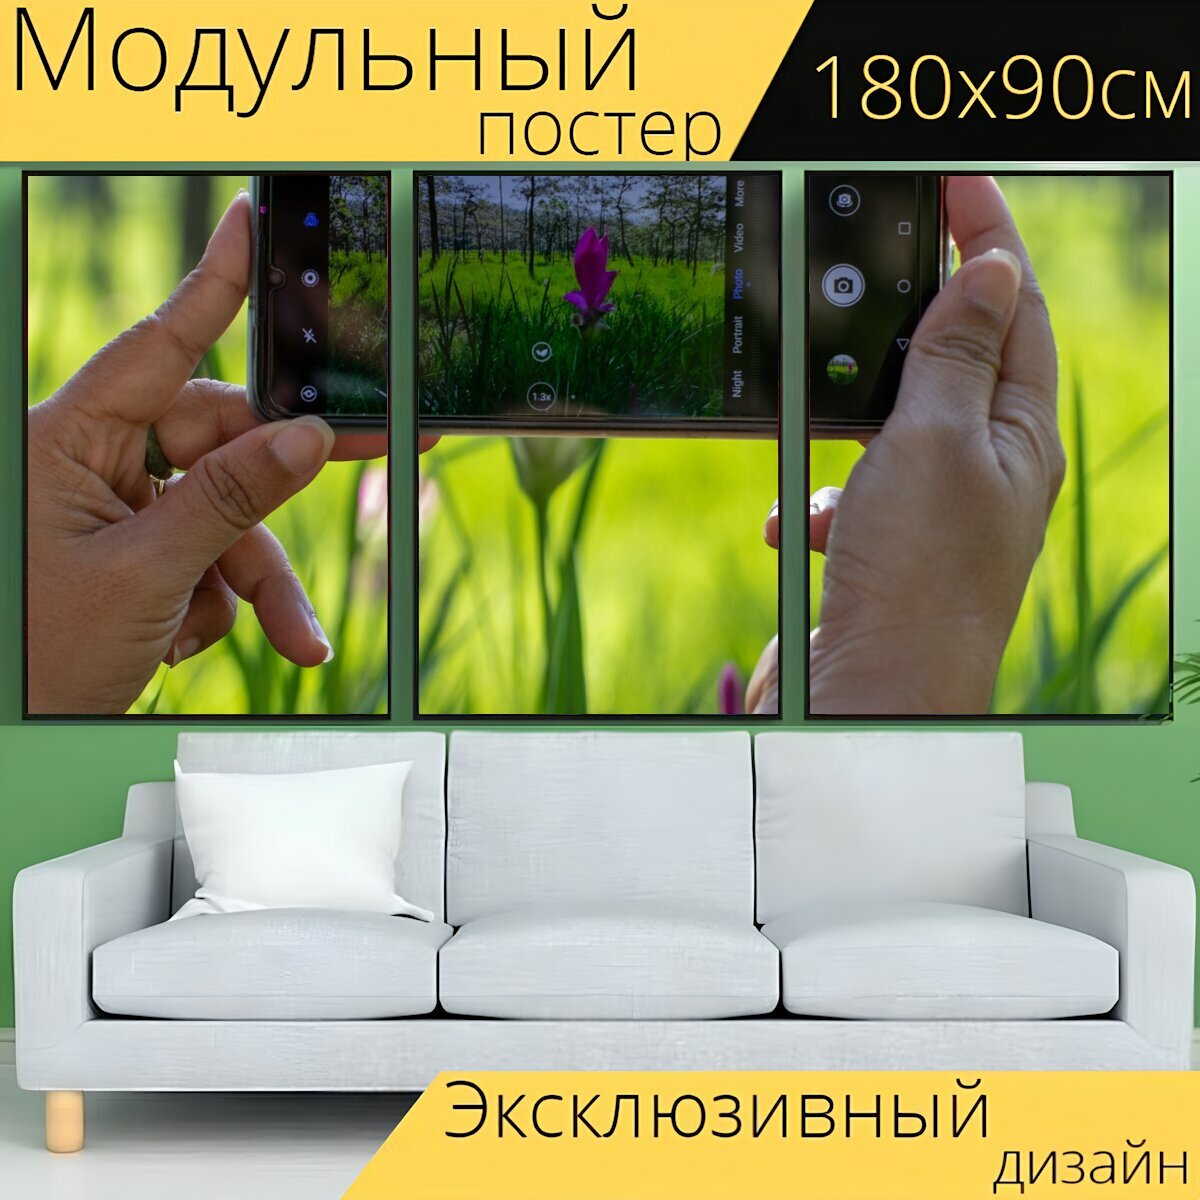 Модульный постер "Смартфон, руки, фотография" 180 x 90 см. для интерьера